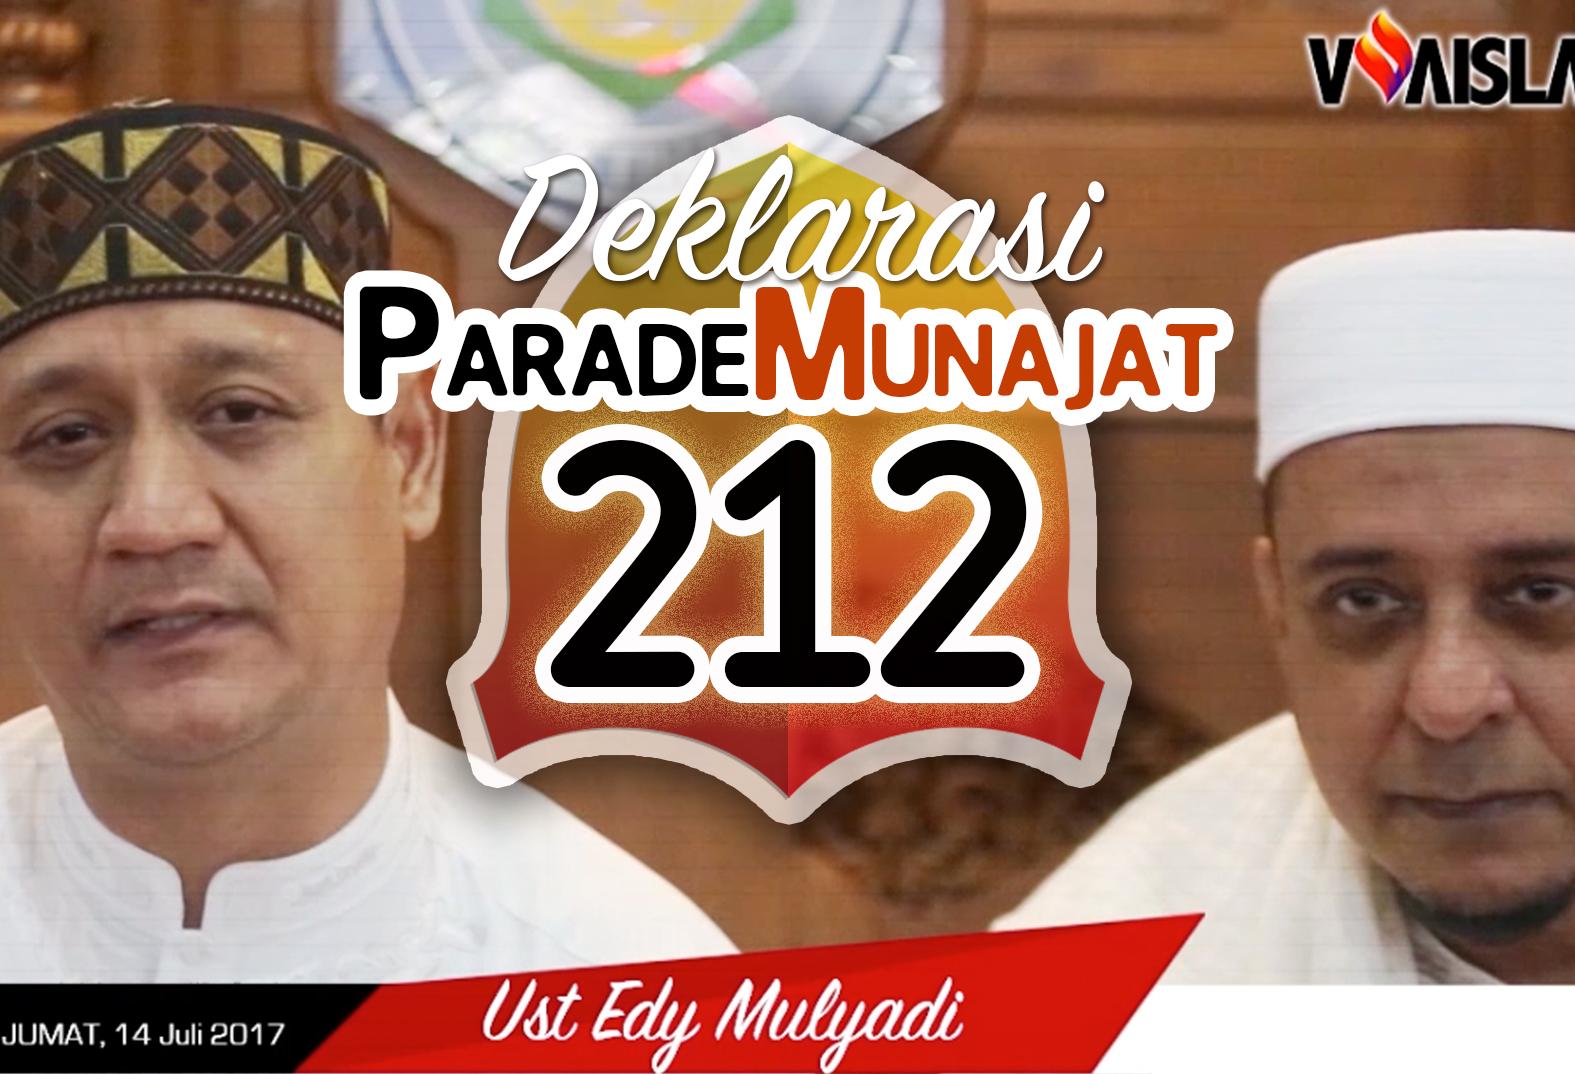 [VIDEO] Deklarasi Parade Munajat 212, dibesut Alumni Parade Tauhid & Aksi 212